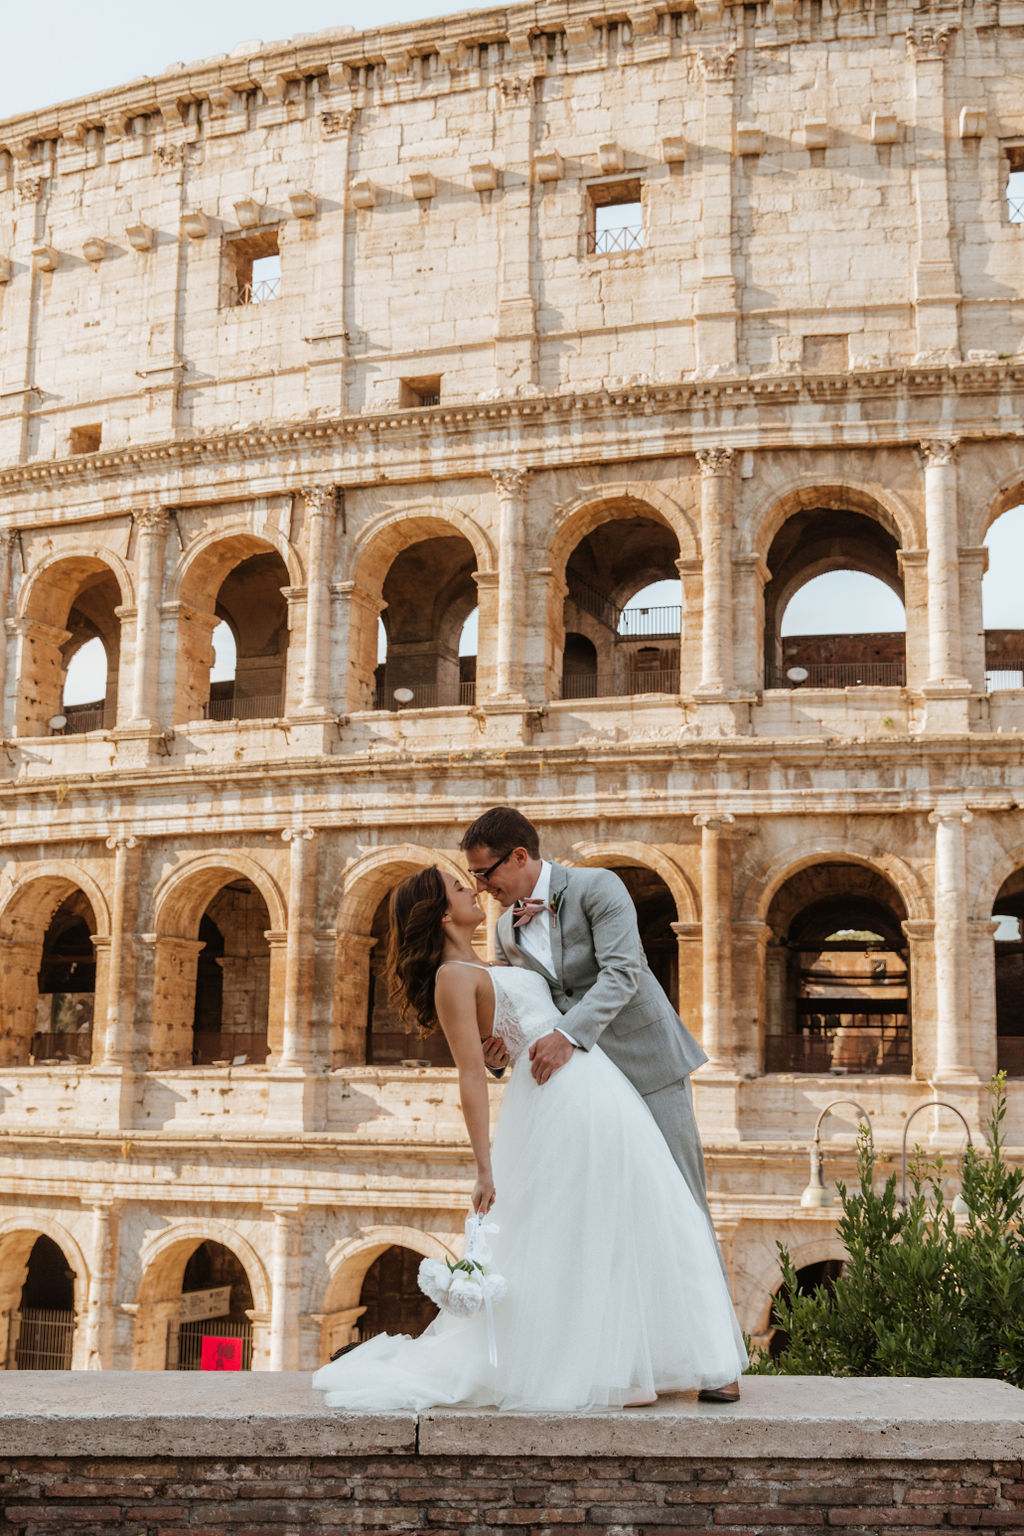 Maggie & Matt's destination wedding in Rome